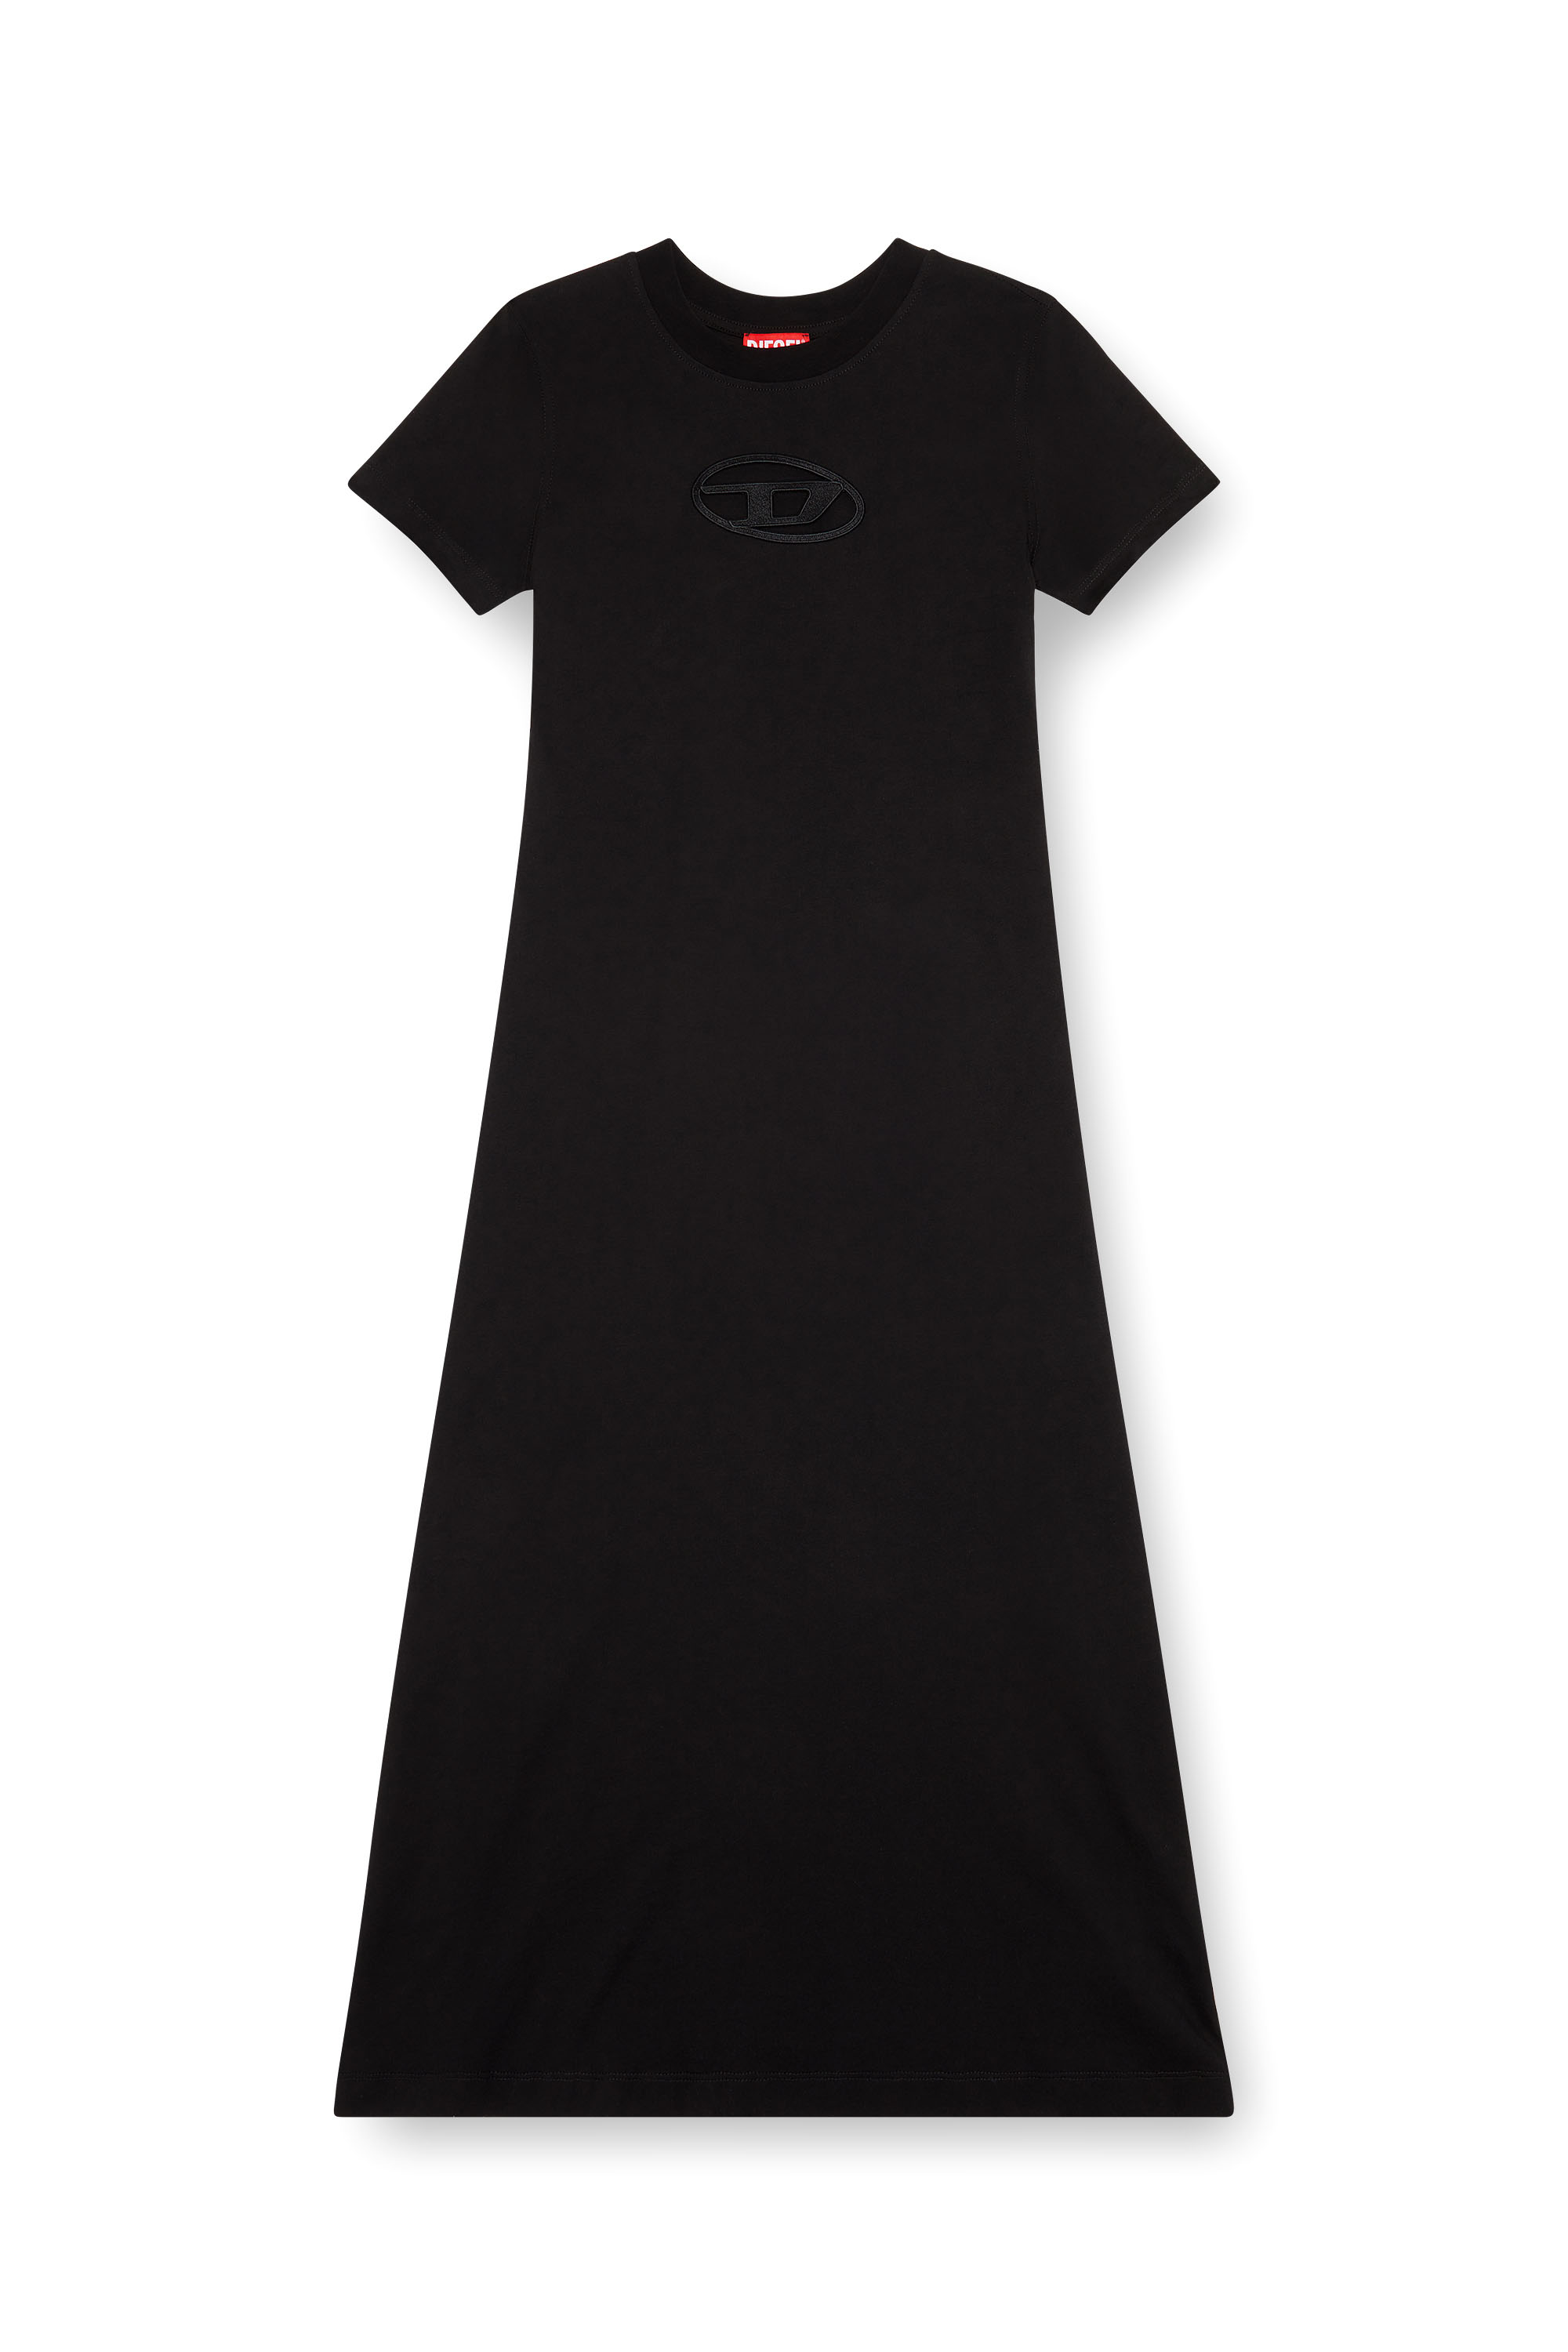 Diesel - D-ALIN-OD, Mujer Vestido camiseta con D bordada in Negro - Image 1